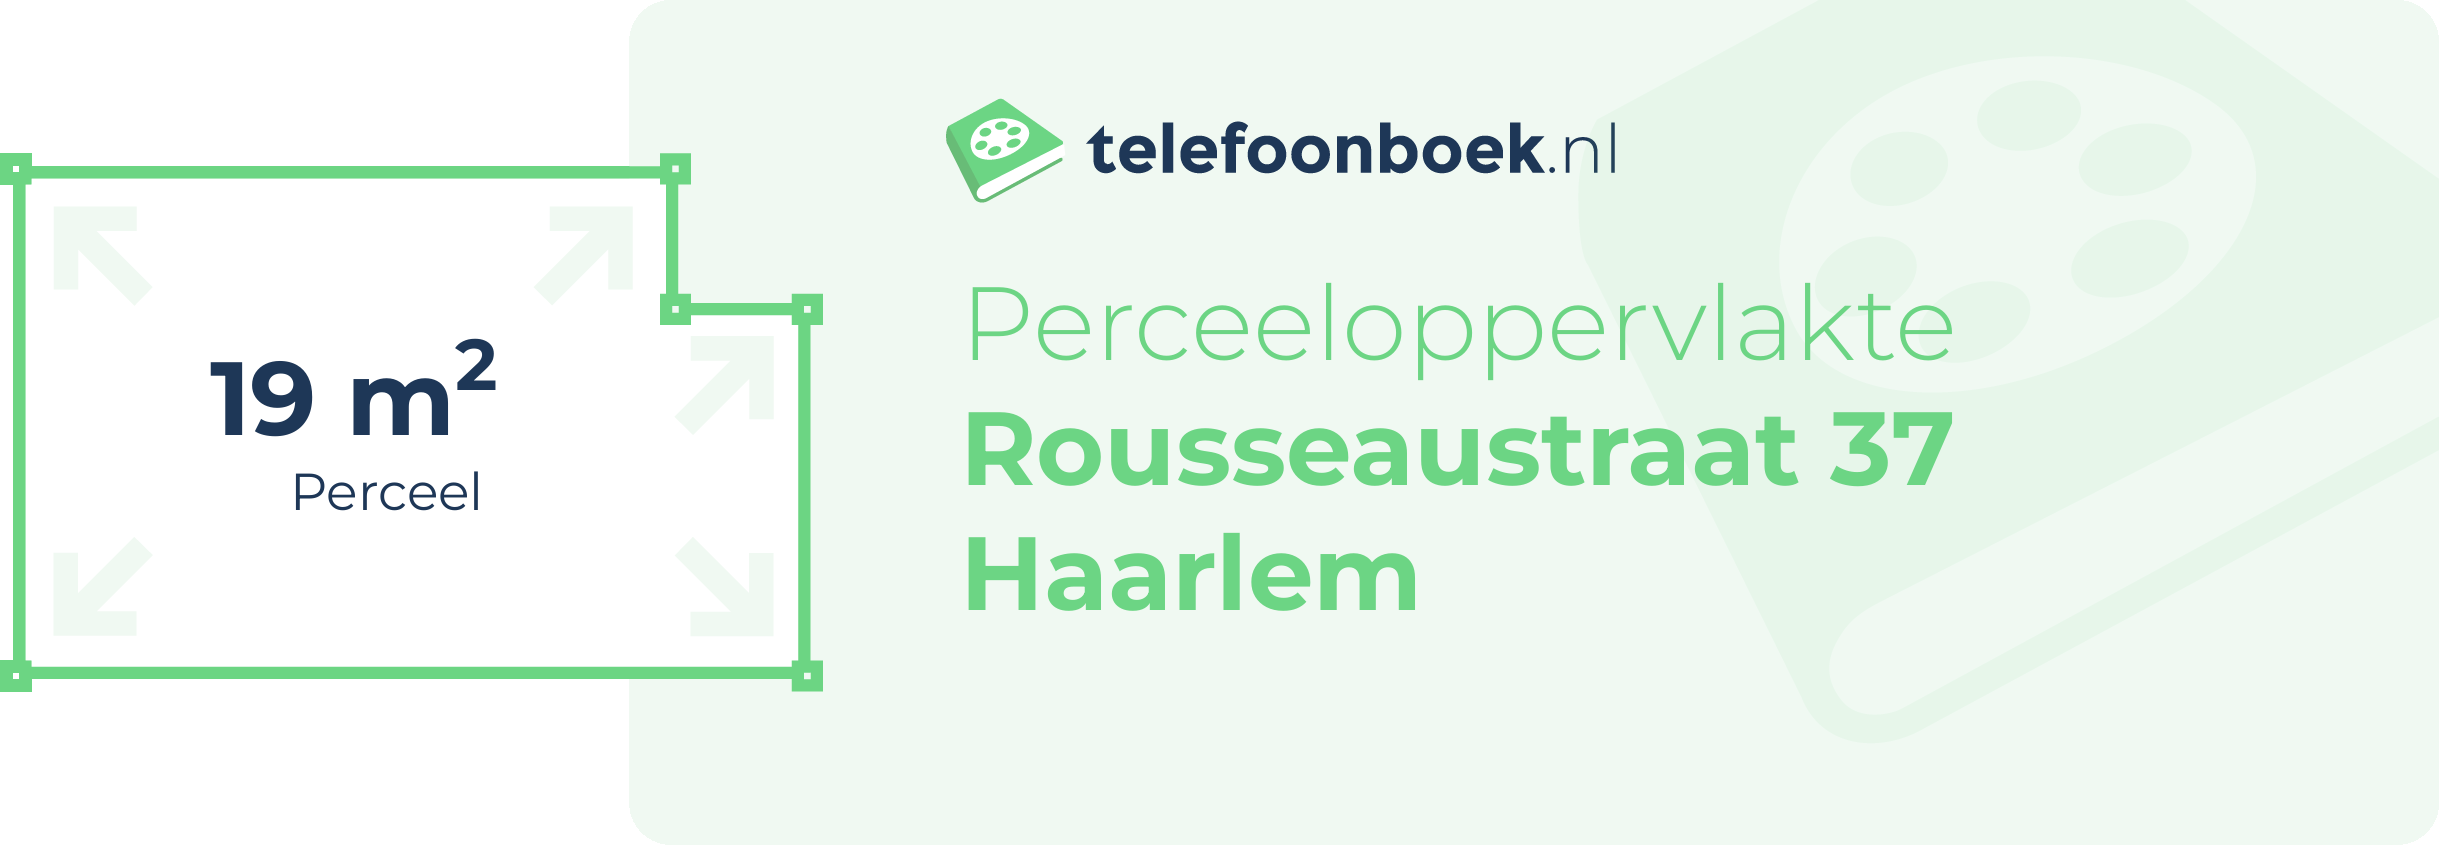 Perceeloppervlakte Rousseaustraat 37 Haarlem